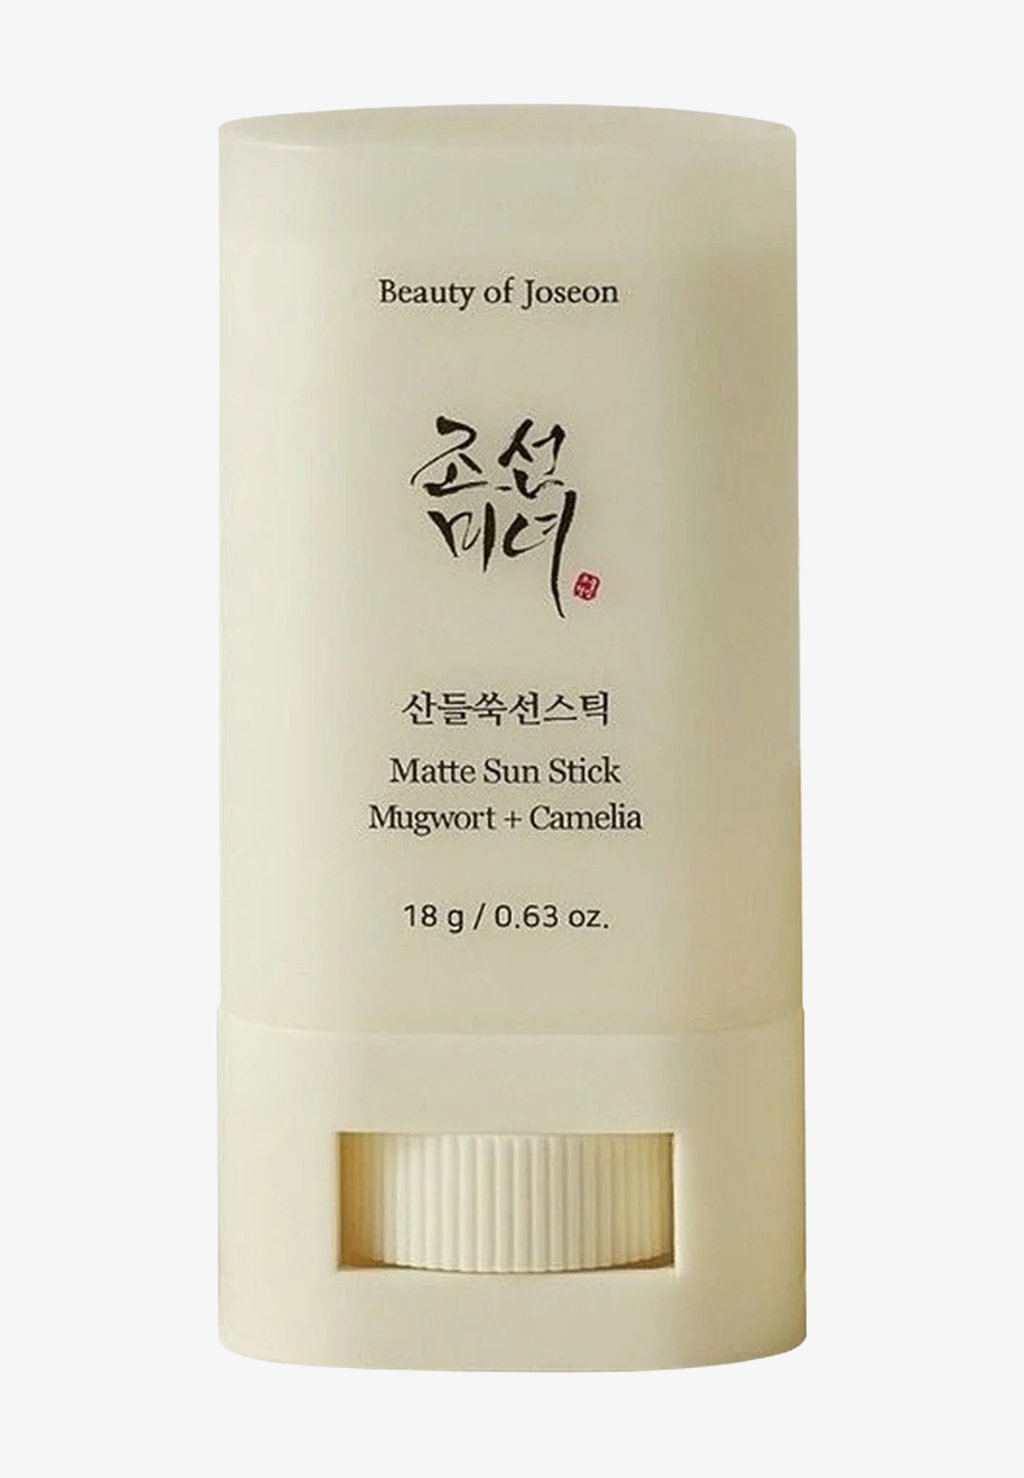 Солнцезащитный крем Matte Sun Stick: Полынь + Камелия Spf50 Beauty of Joseon beauty of joseon matte sun stick полынь и камелия spf50 pa 18 г 0 63 унции